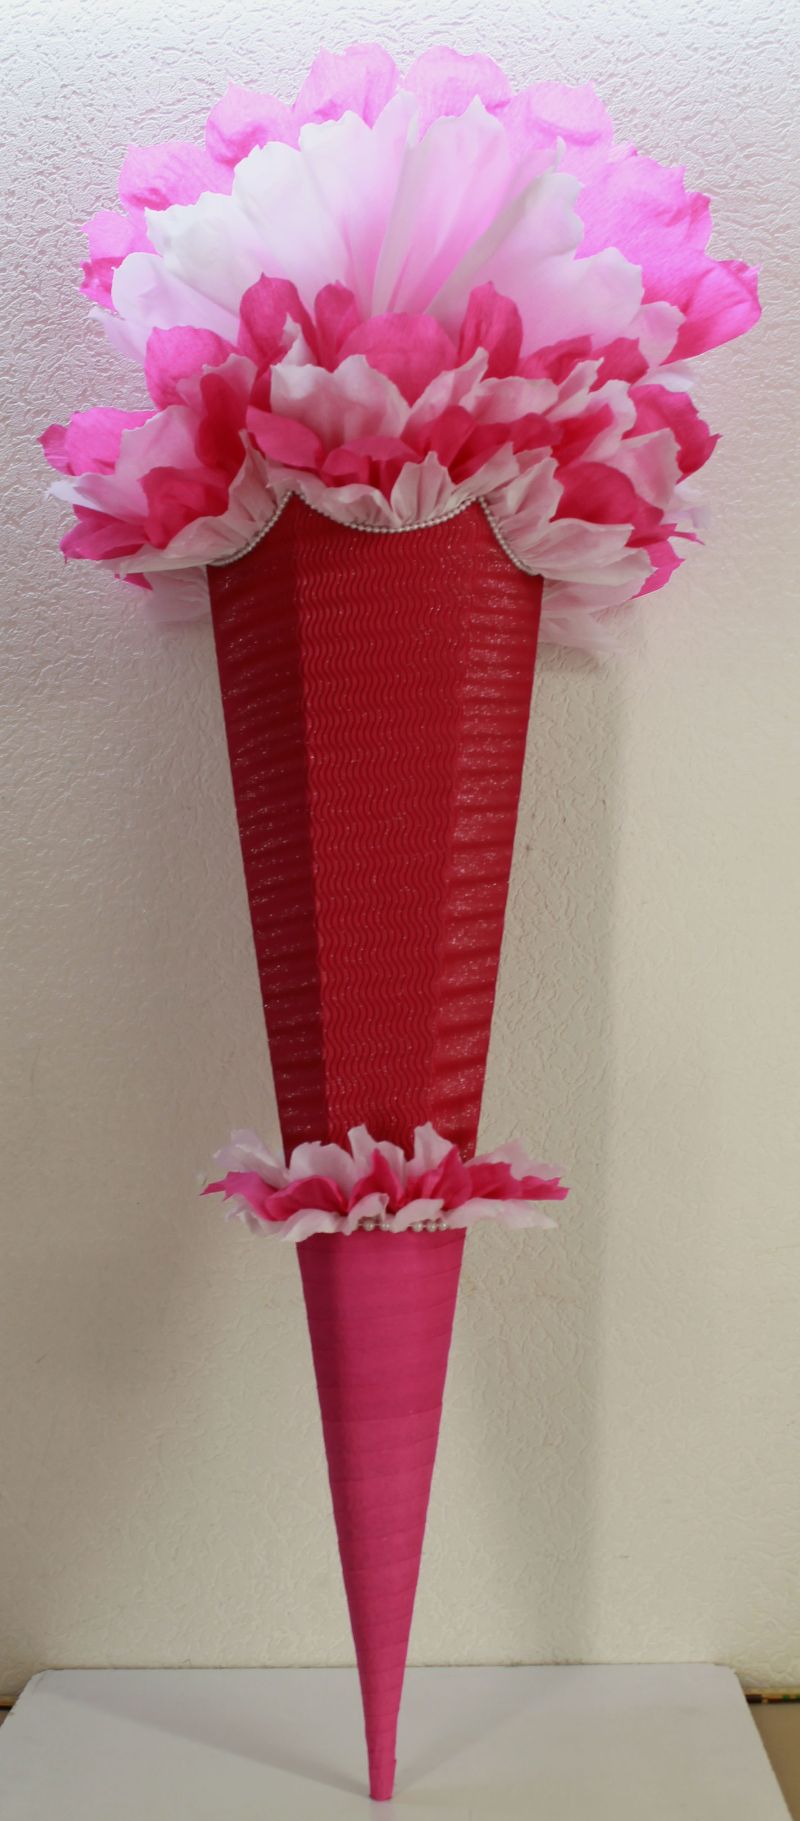  - Schultüte Zuckertüte Rohling zum selbst verzieren Rohling 70 75 80 85 90 100 cm / 1m für Mädchen HANDARBEIT pink weiß